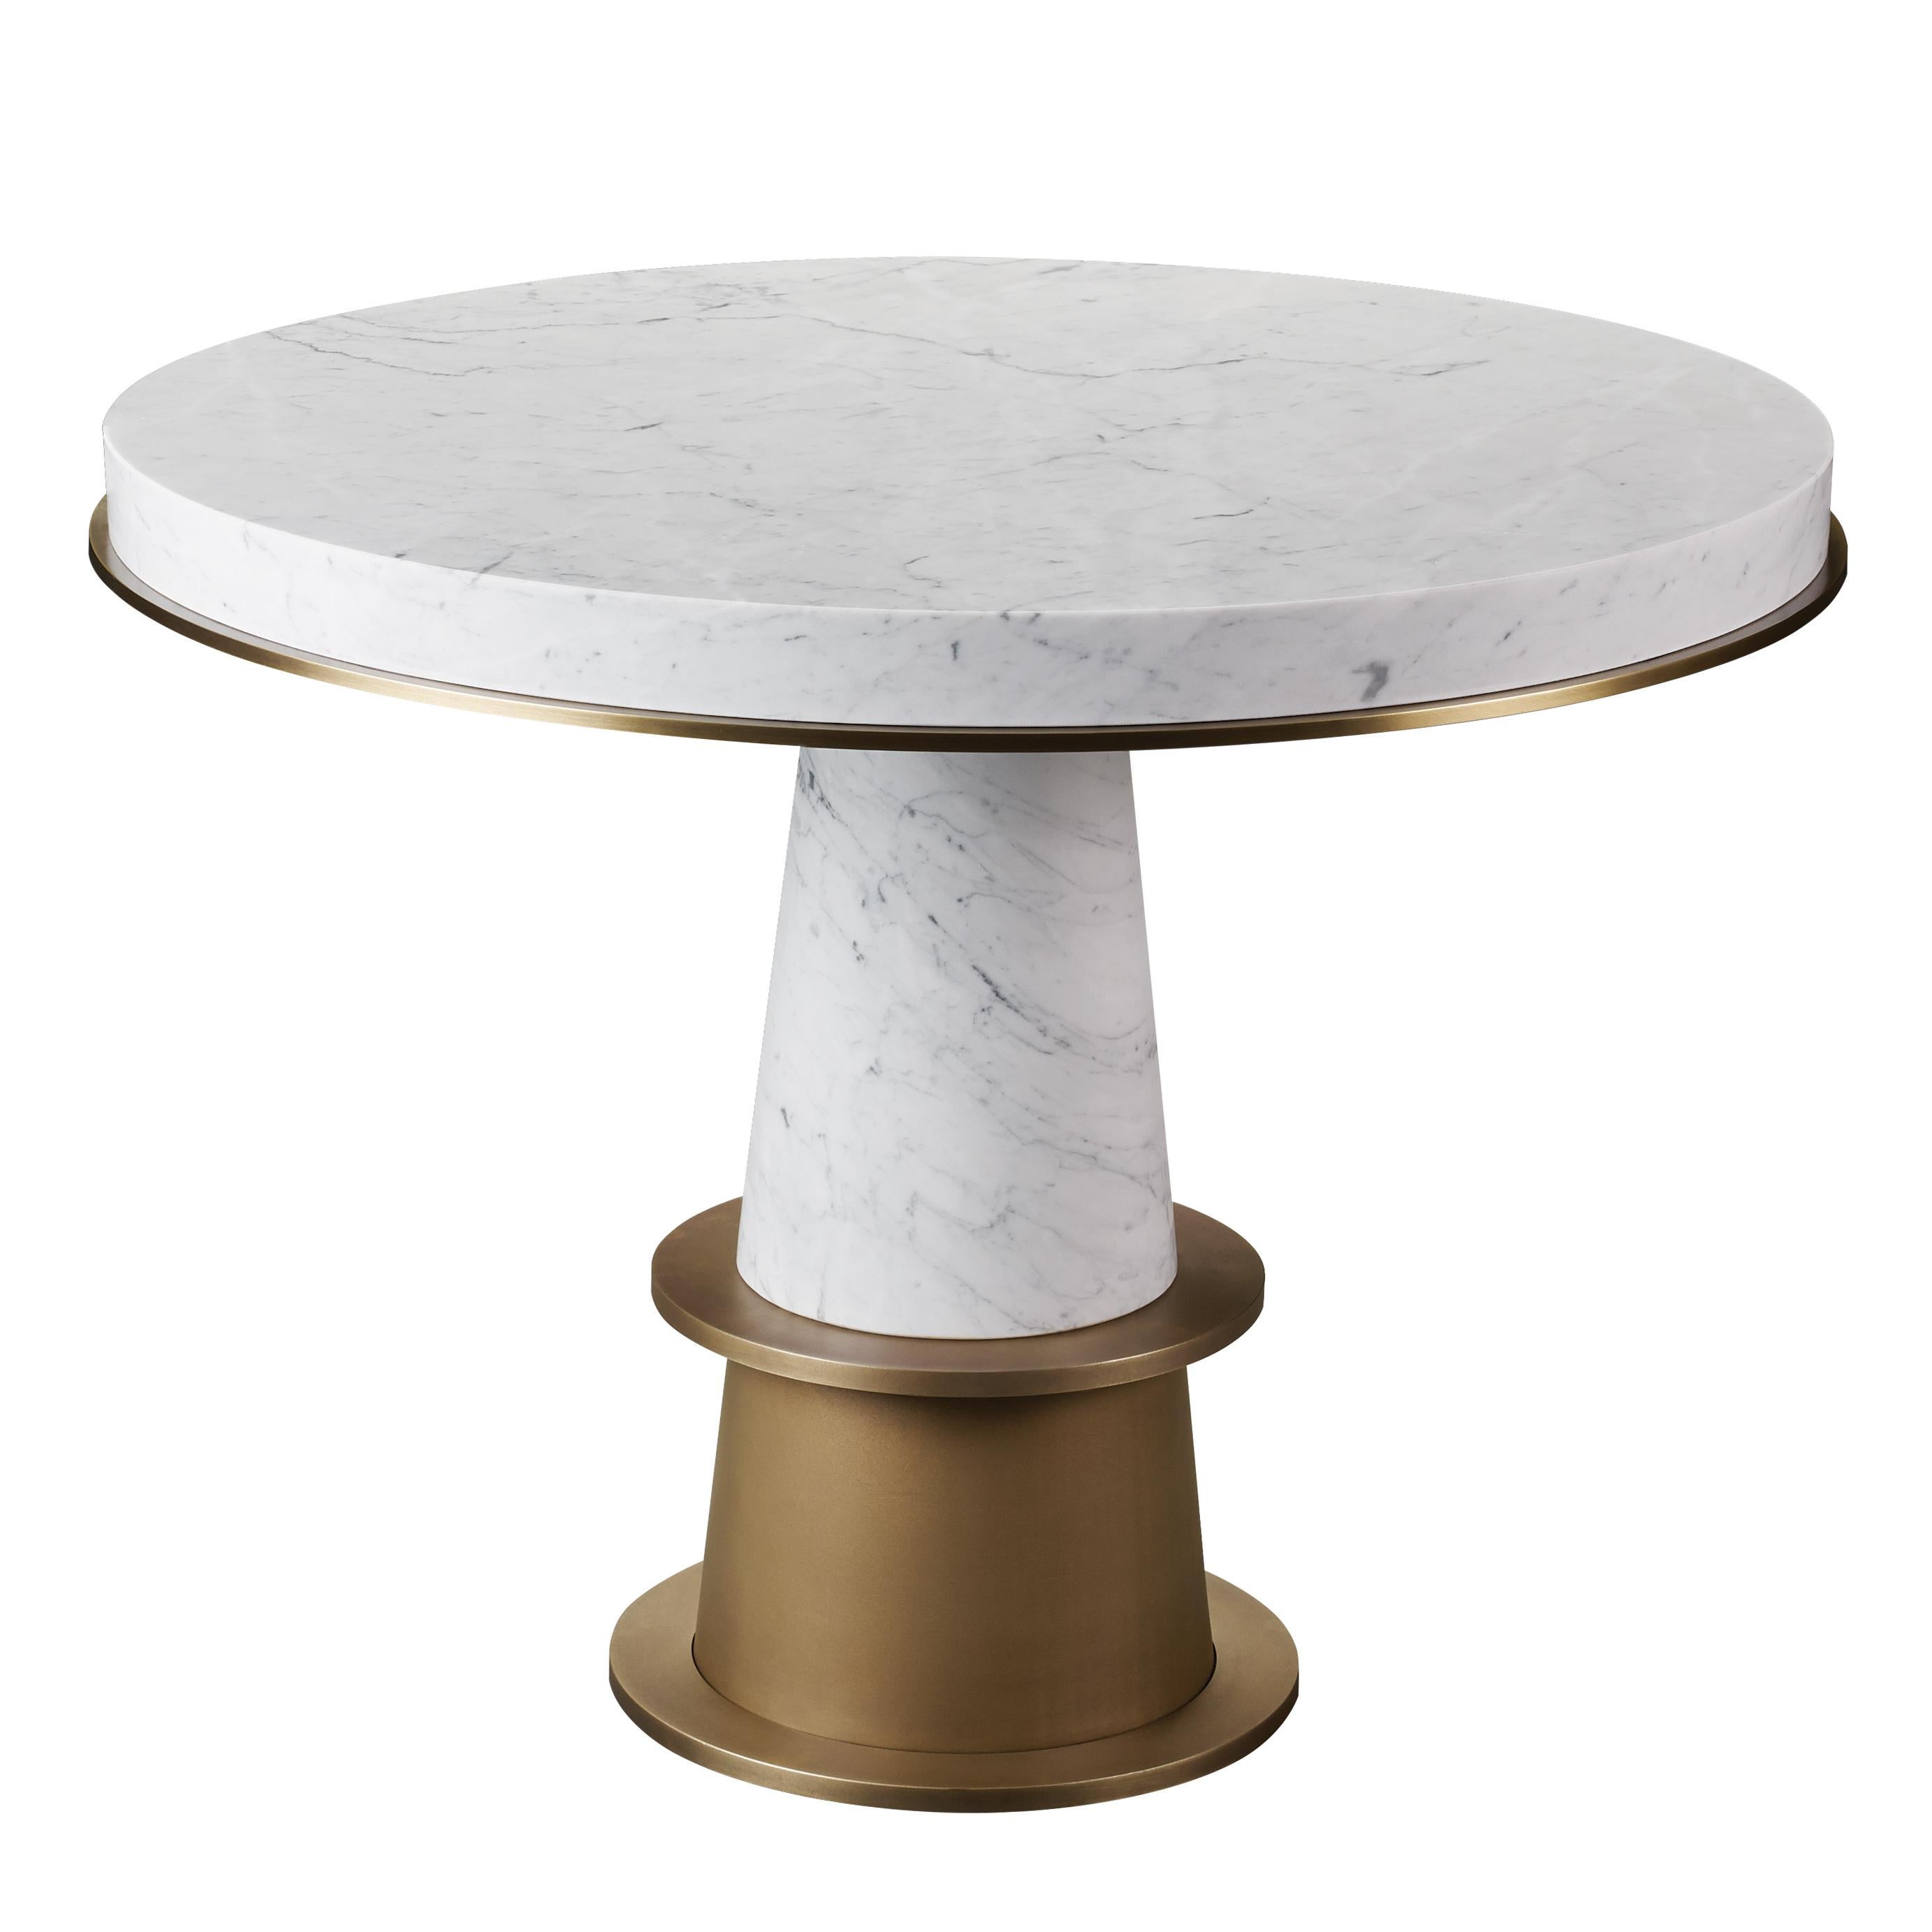 For Sale: White (marble di carrara.jpg) Promemoria Tornasole Table in Marble by Romeo Sozzi